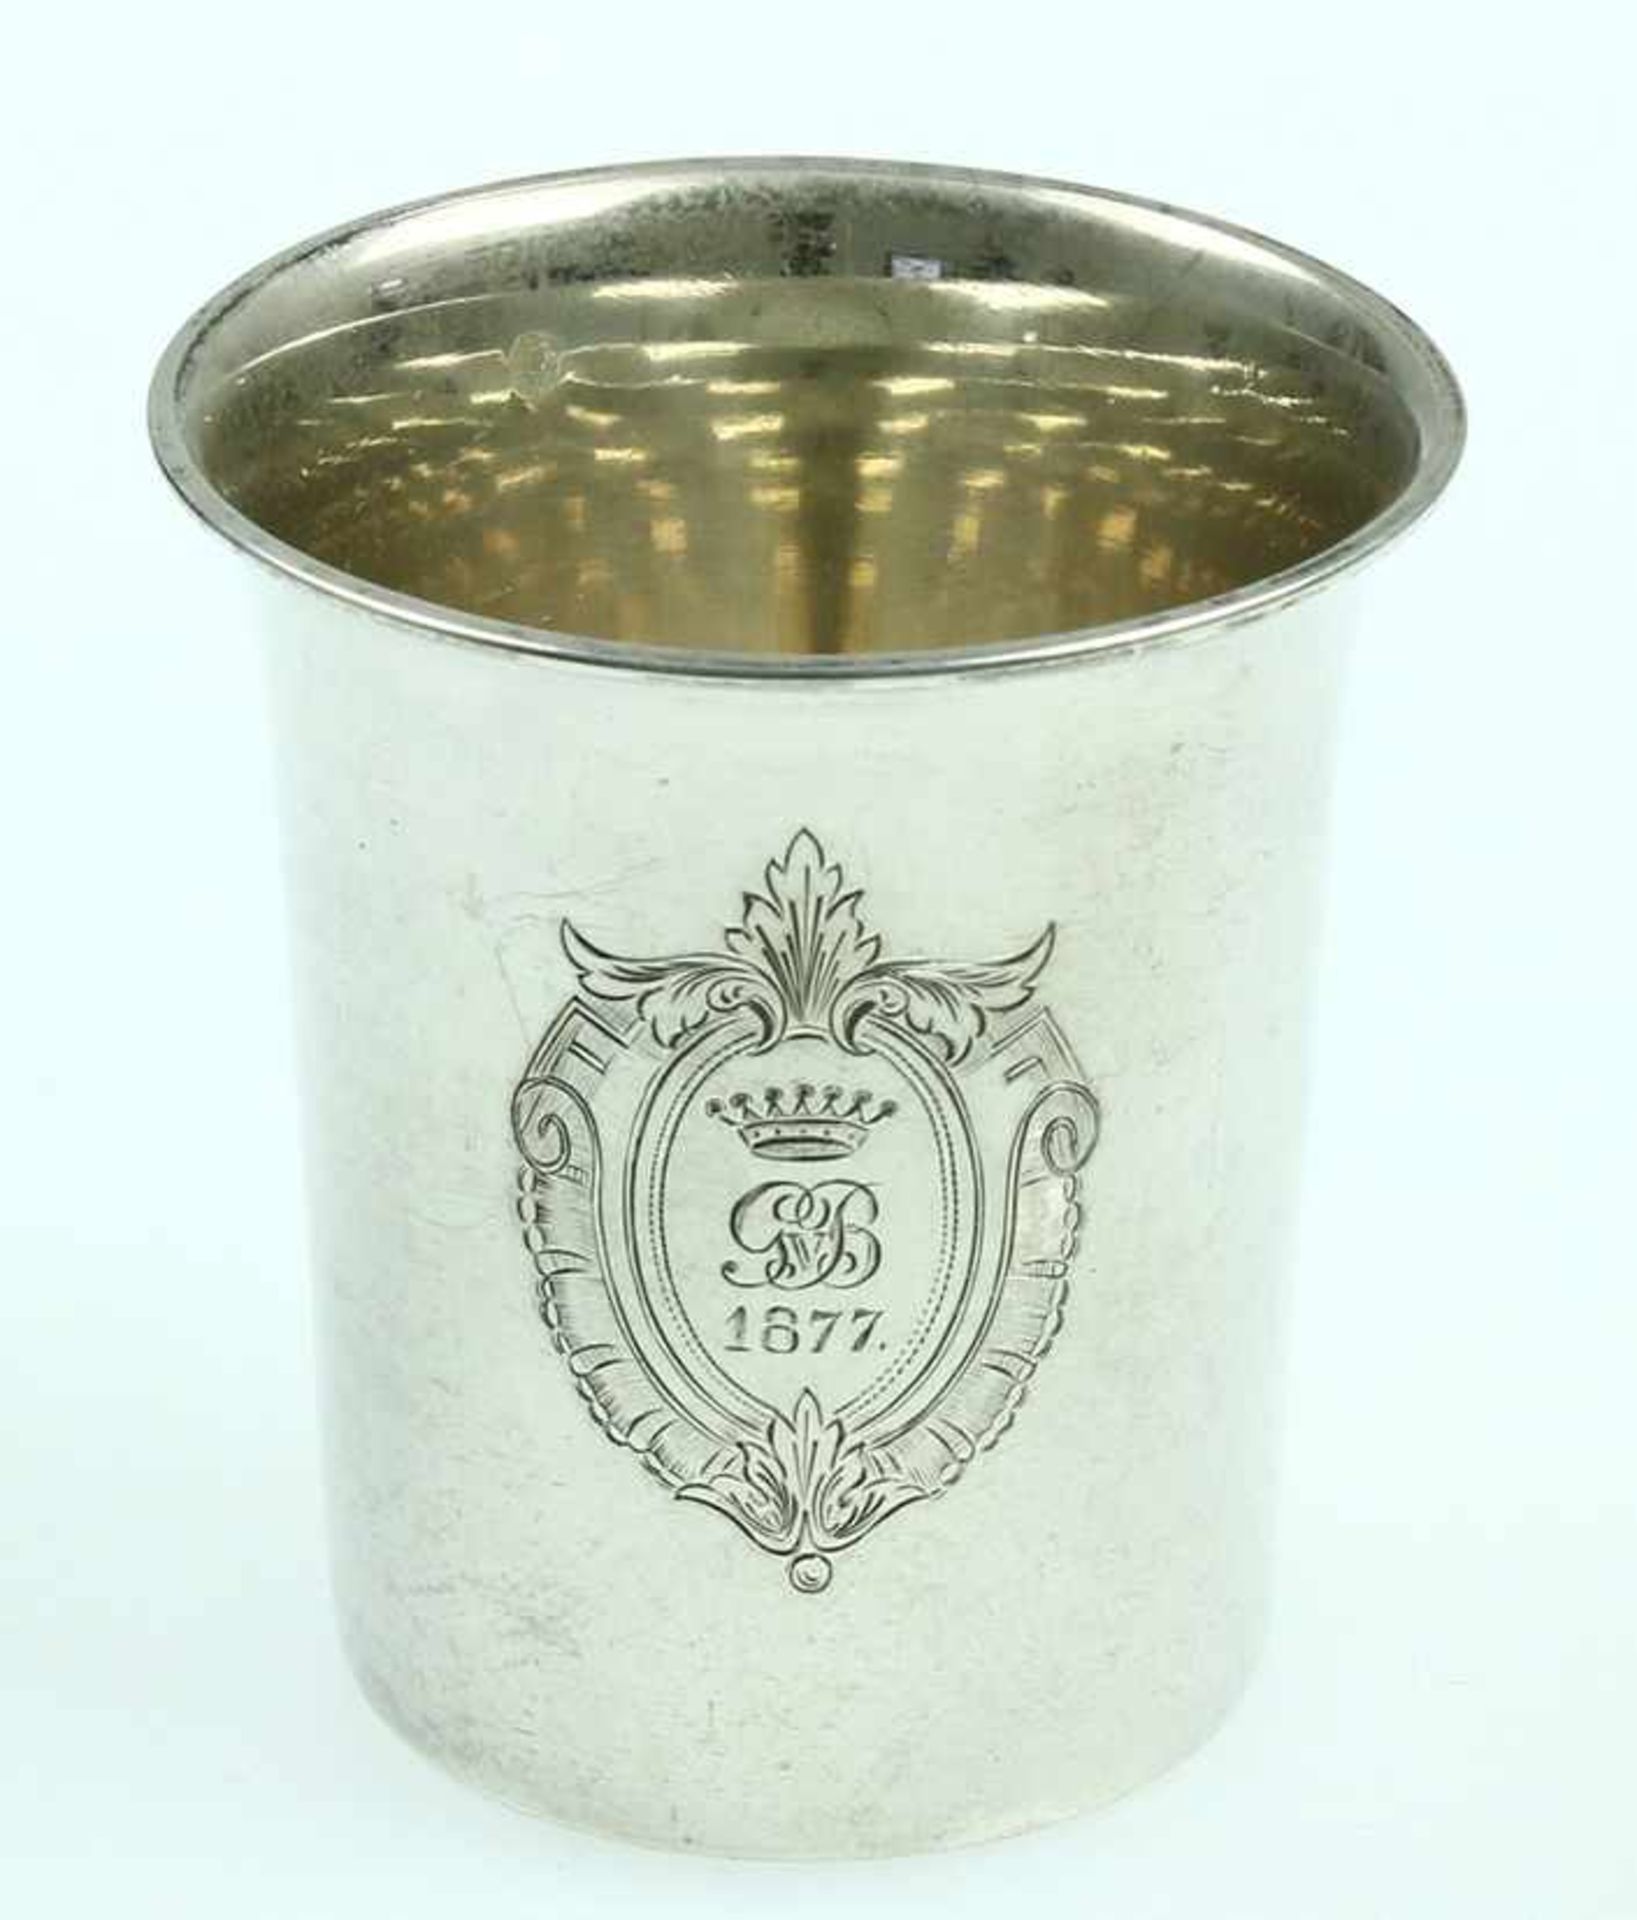 2e gehalte zilveren beker met omgeslagen rand en gegraveerd monogram 'GvB 1877' onder